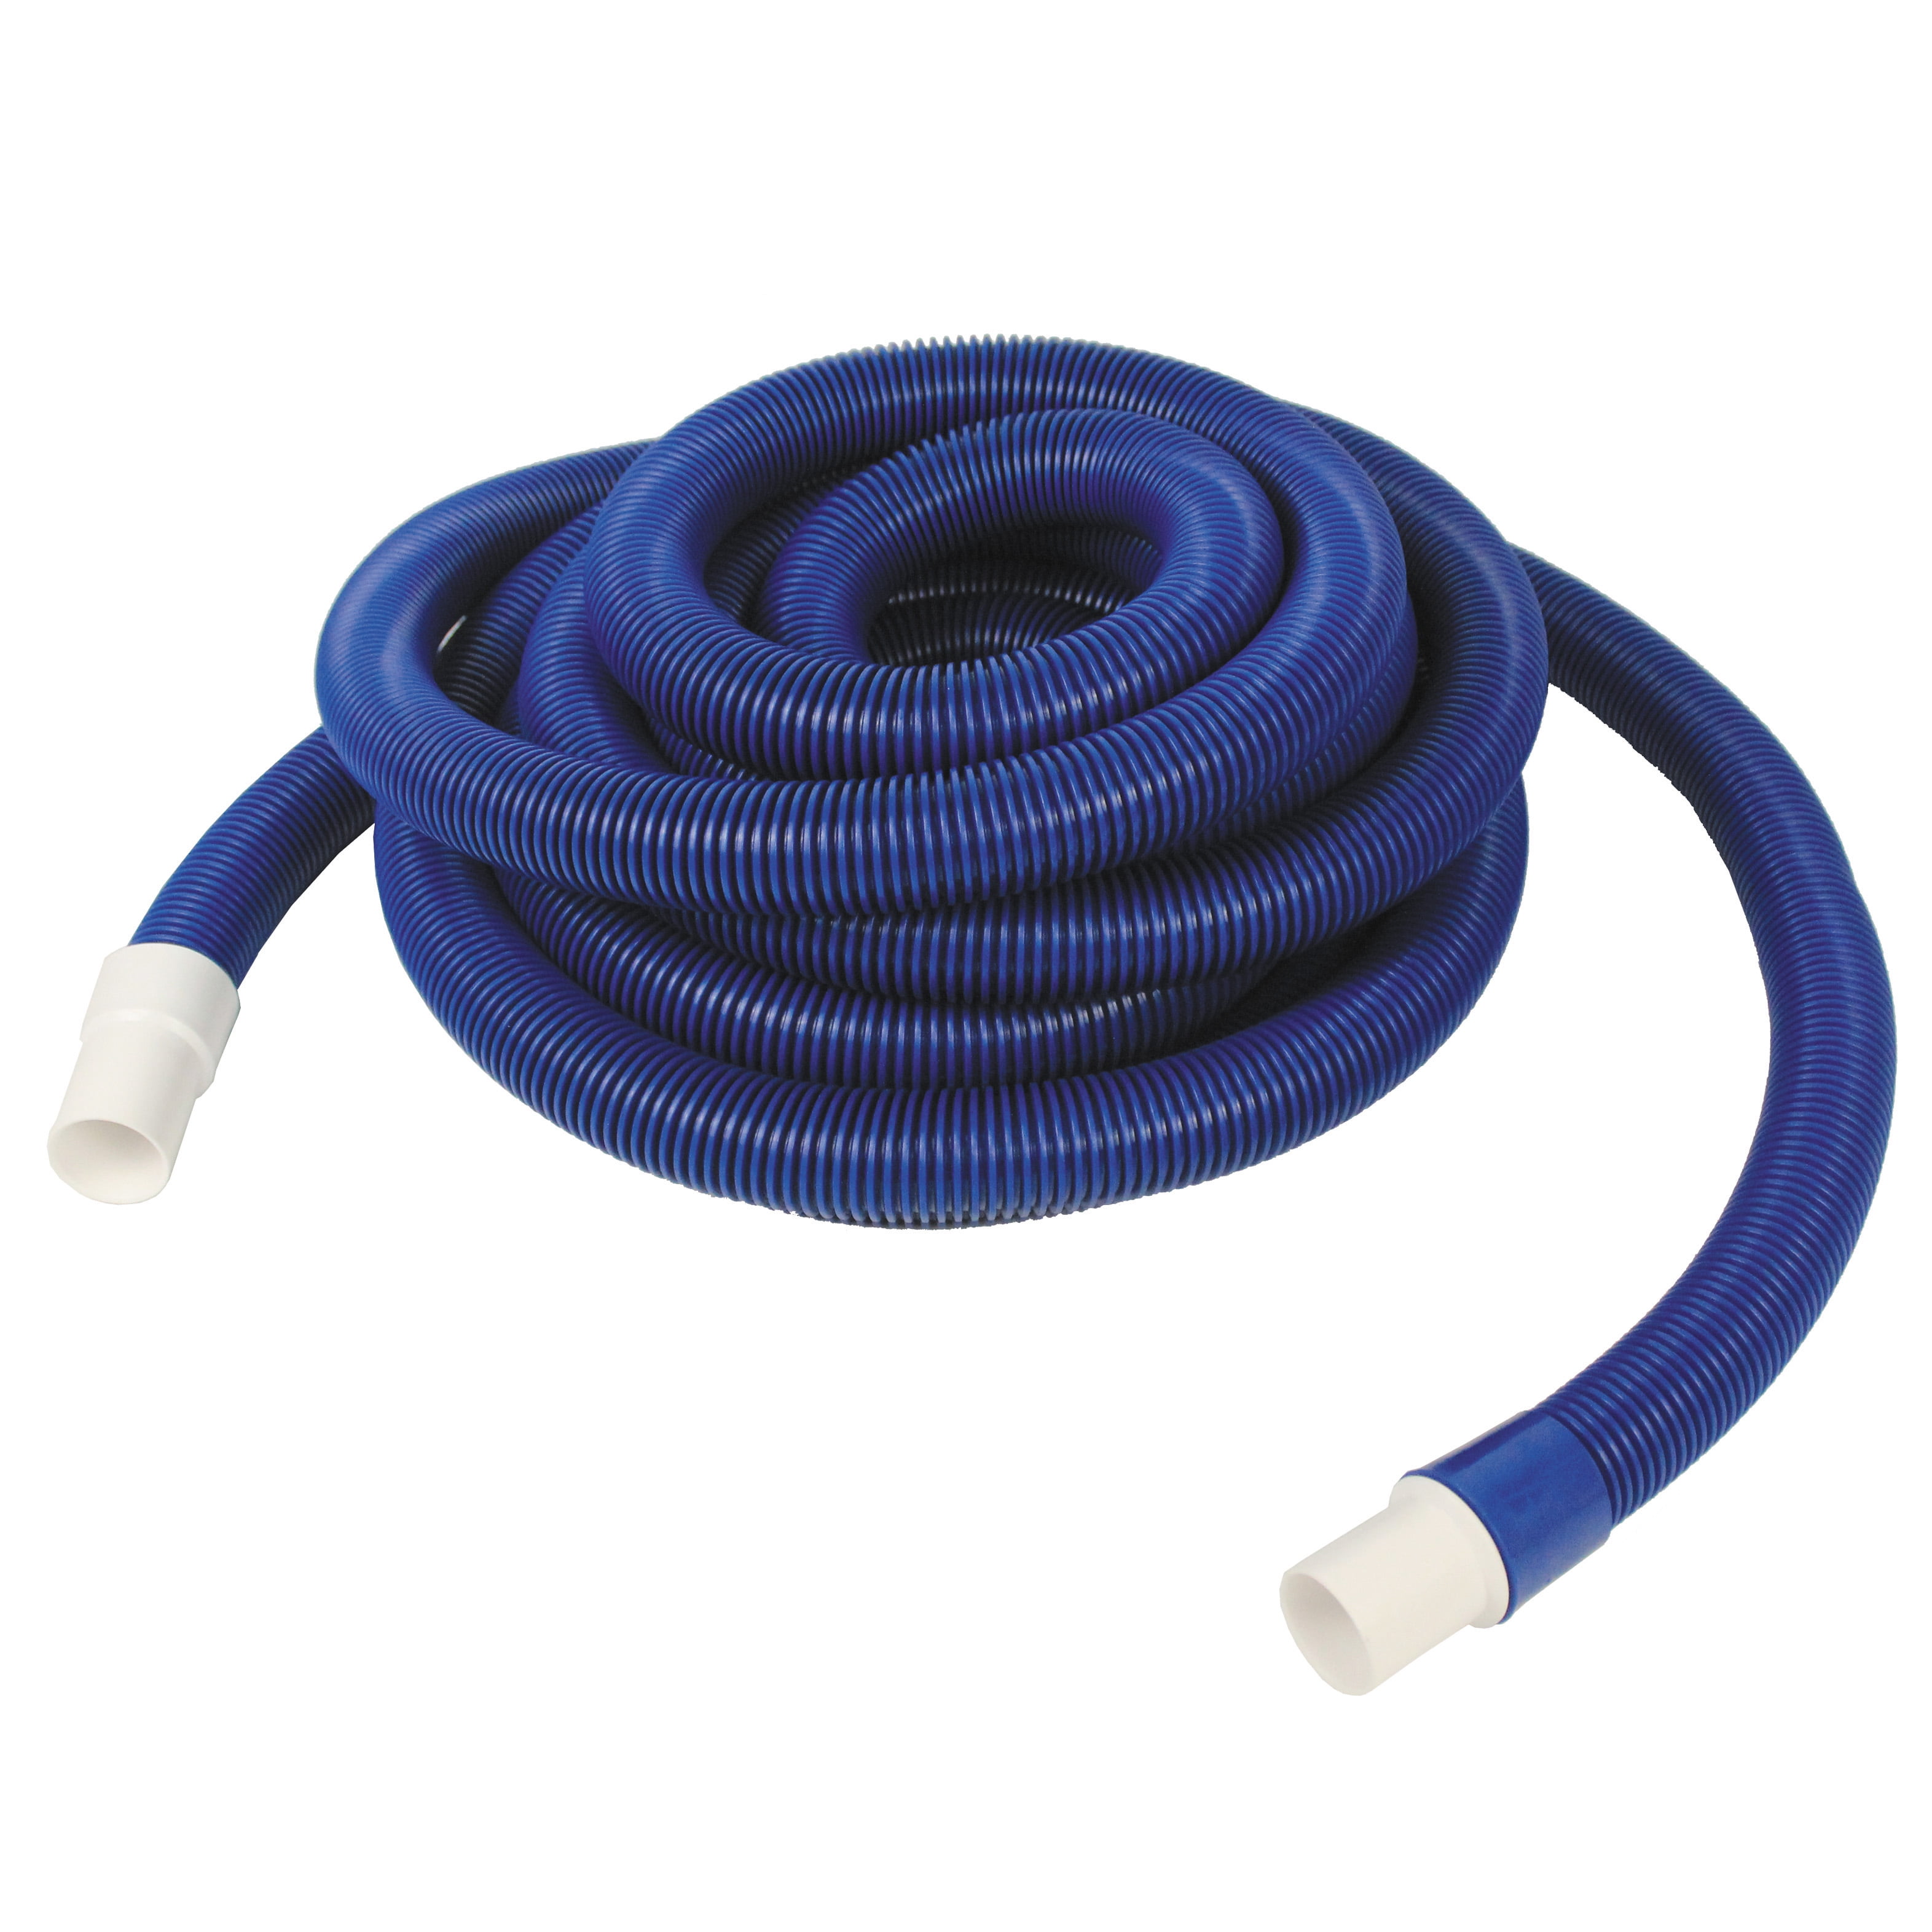 vacuum hoses and accessories